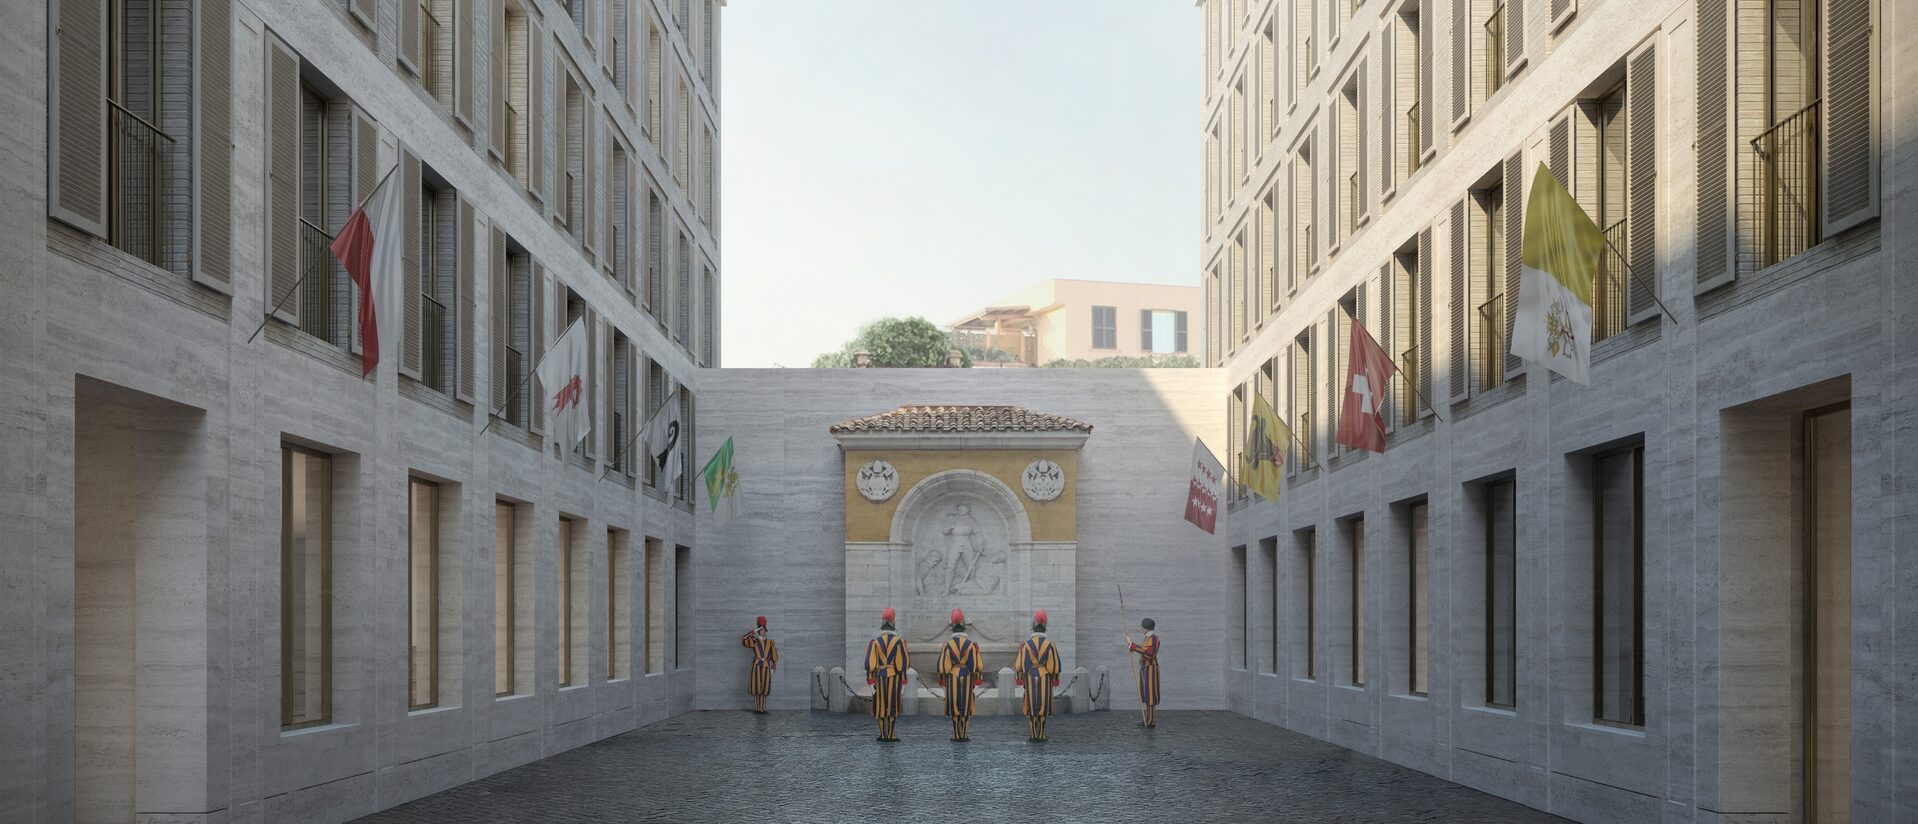 Une projection de la cour de la future caserne de la Garde suisse au Vatican | © Durisch + Nolli 